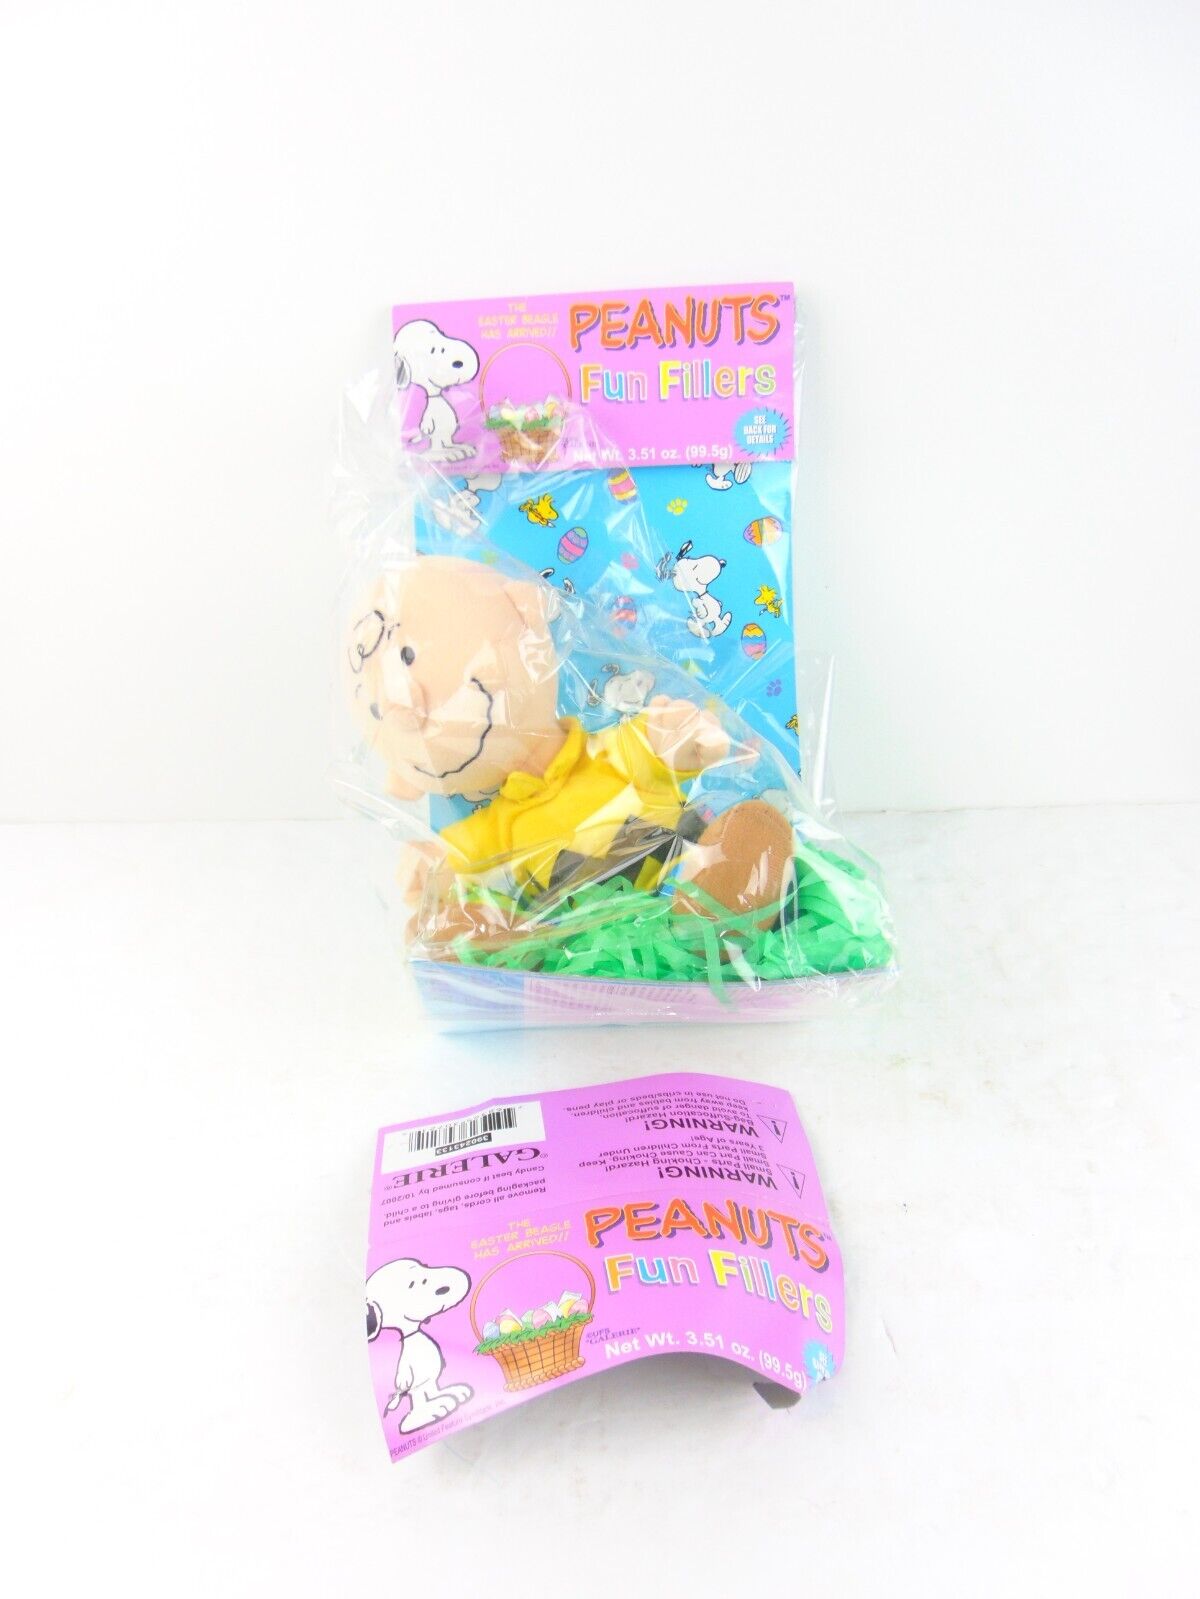 Vintage Galerie Peanuts Charlie Brown Easter Fun Fillers Plush